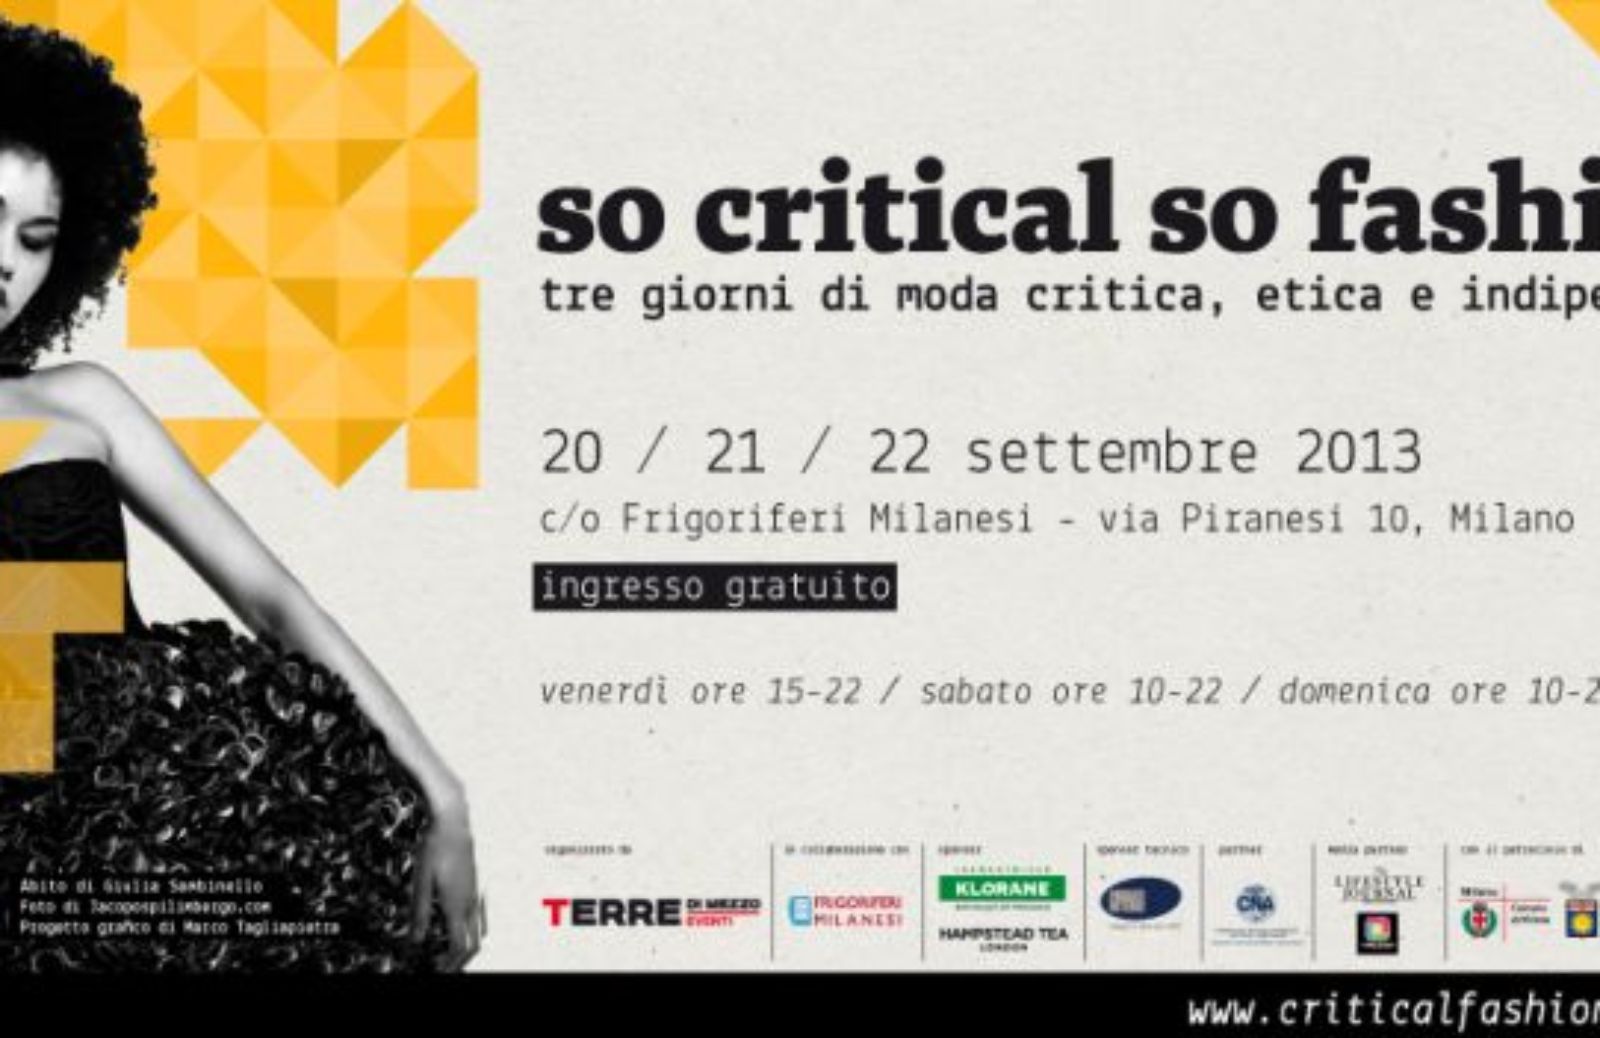 Come partecipare a So critical so fashion 2013: l'evento dedicato alla moda critica ed etica